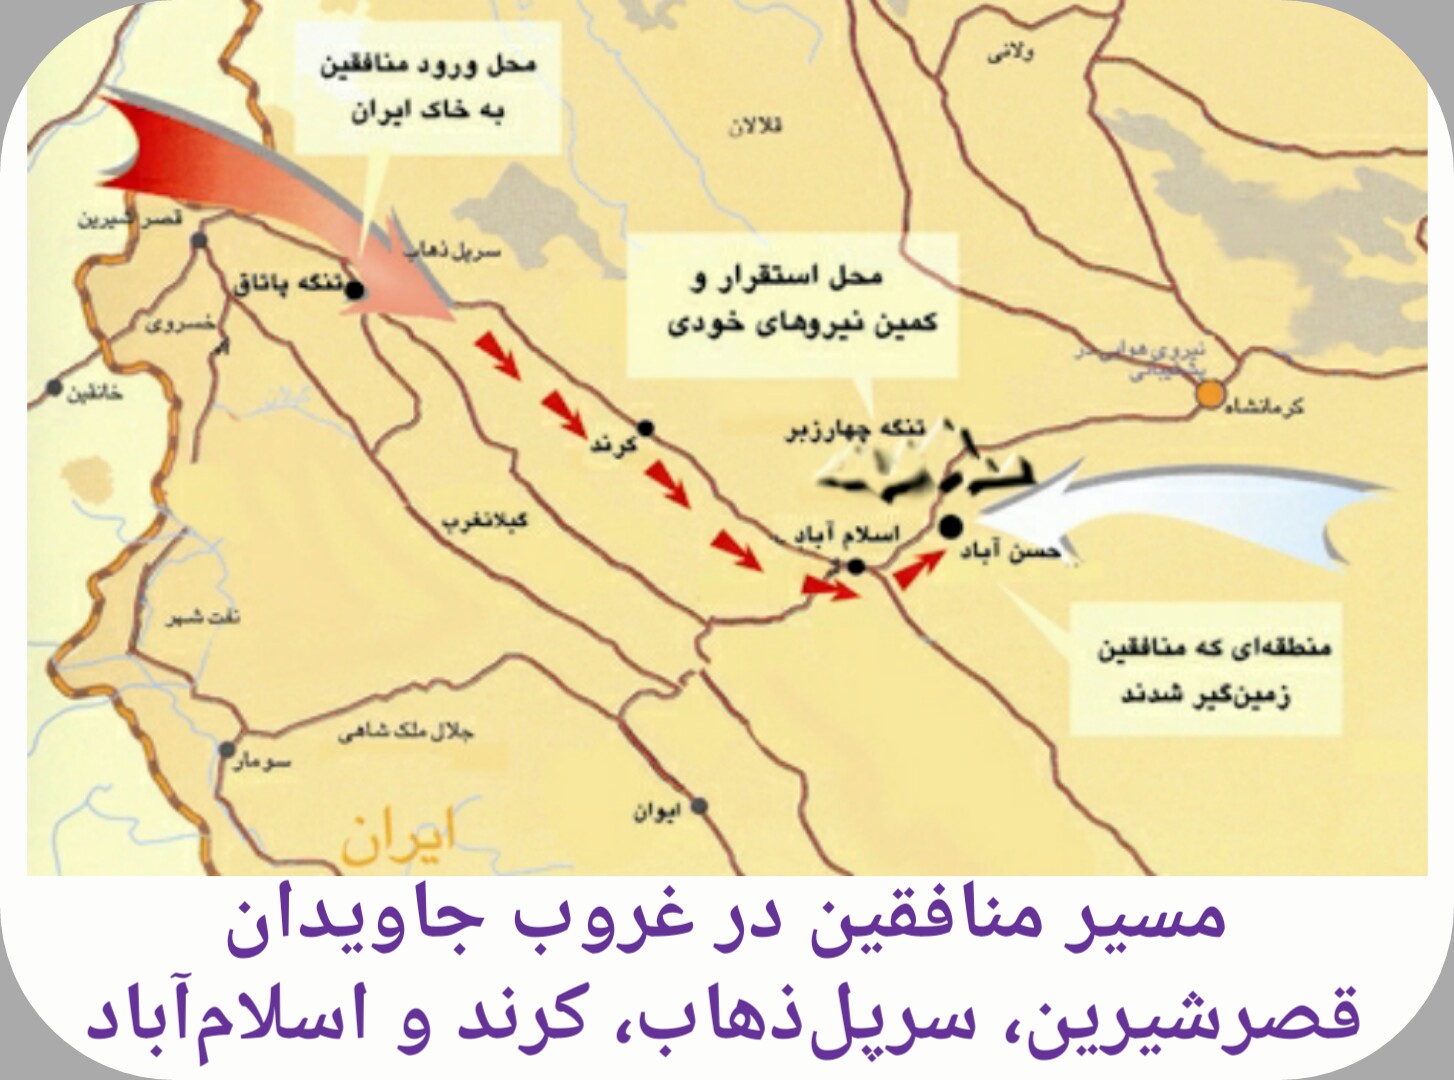 مسیر حرکت منافقین صدامی در عملیات غروب جاویدان 